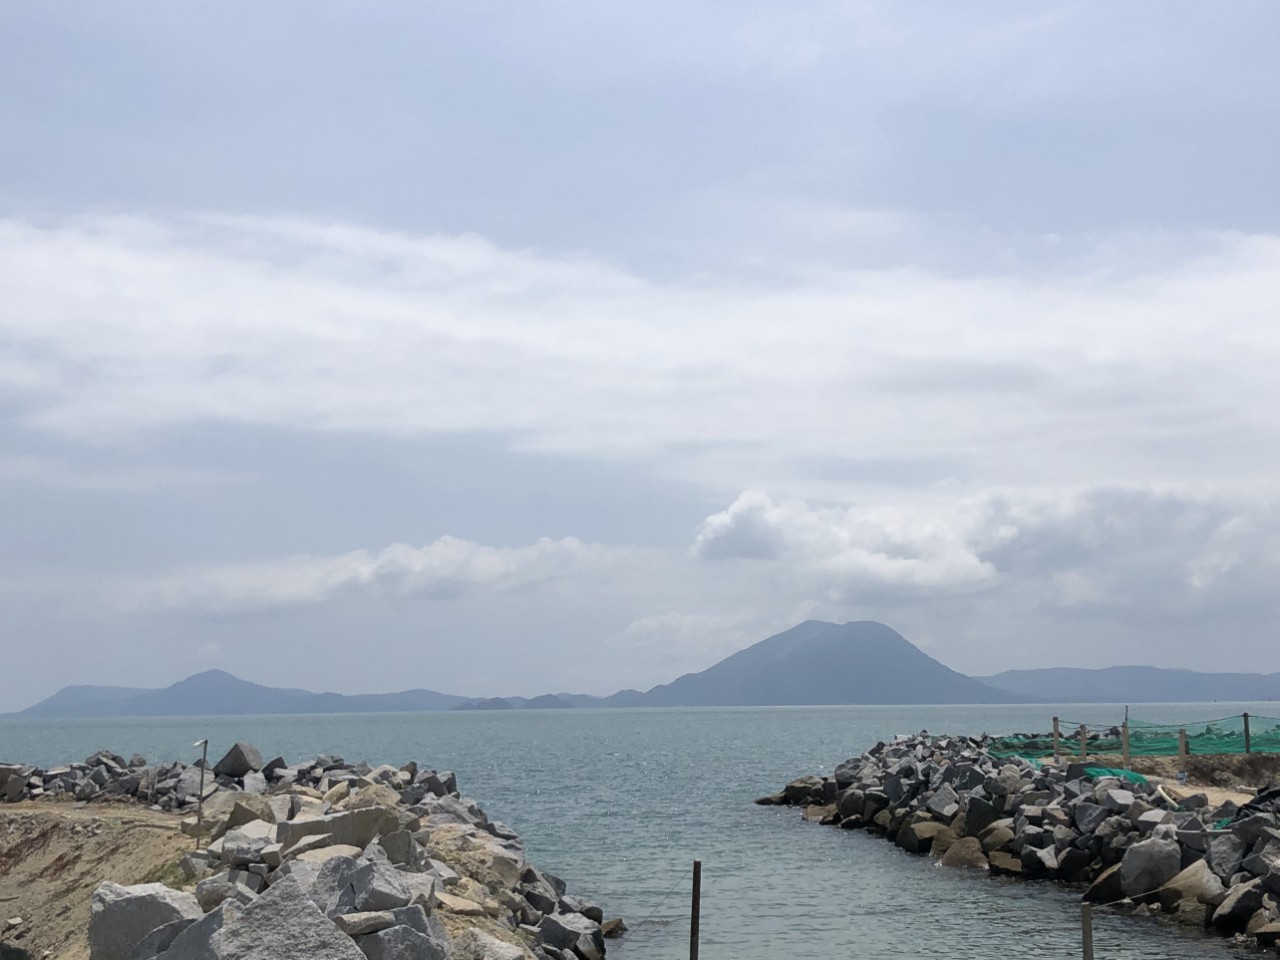 Đất đìa đối diện khu bảo tồn biển Vạn Trào - Vịnh Vân Phong ] cách tp Nha Trang 50km